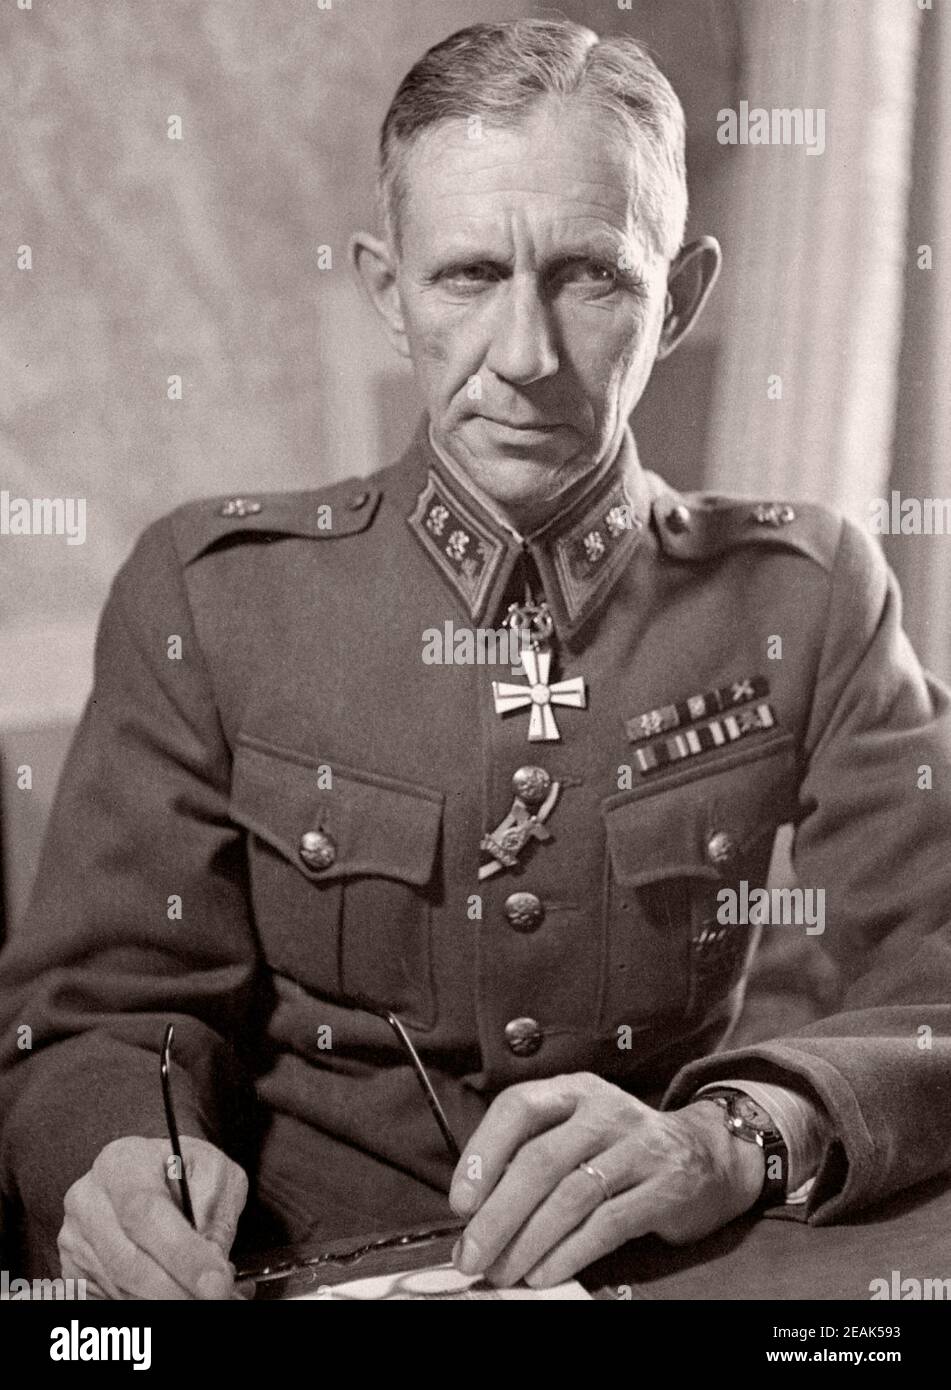 Harald (Öhquist Ohquist Harald, 1891-1971) était un lieutenant général et jaeger, d'une minorité ethnique de la famille suédoise. Banque D'Images